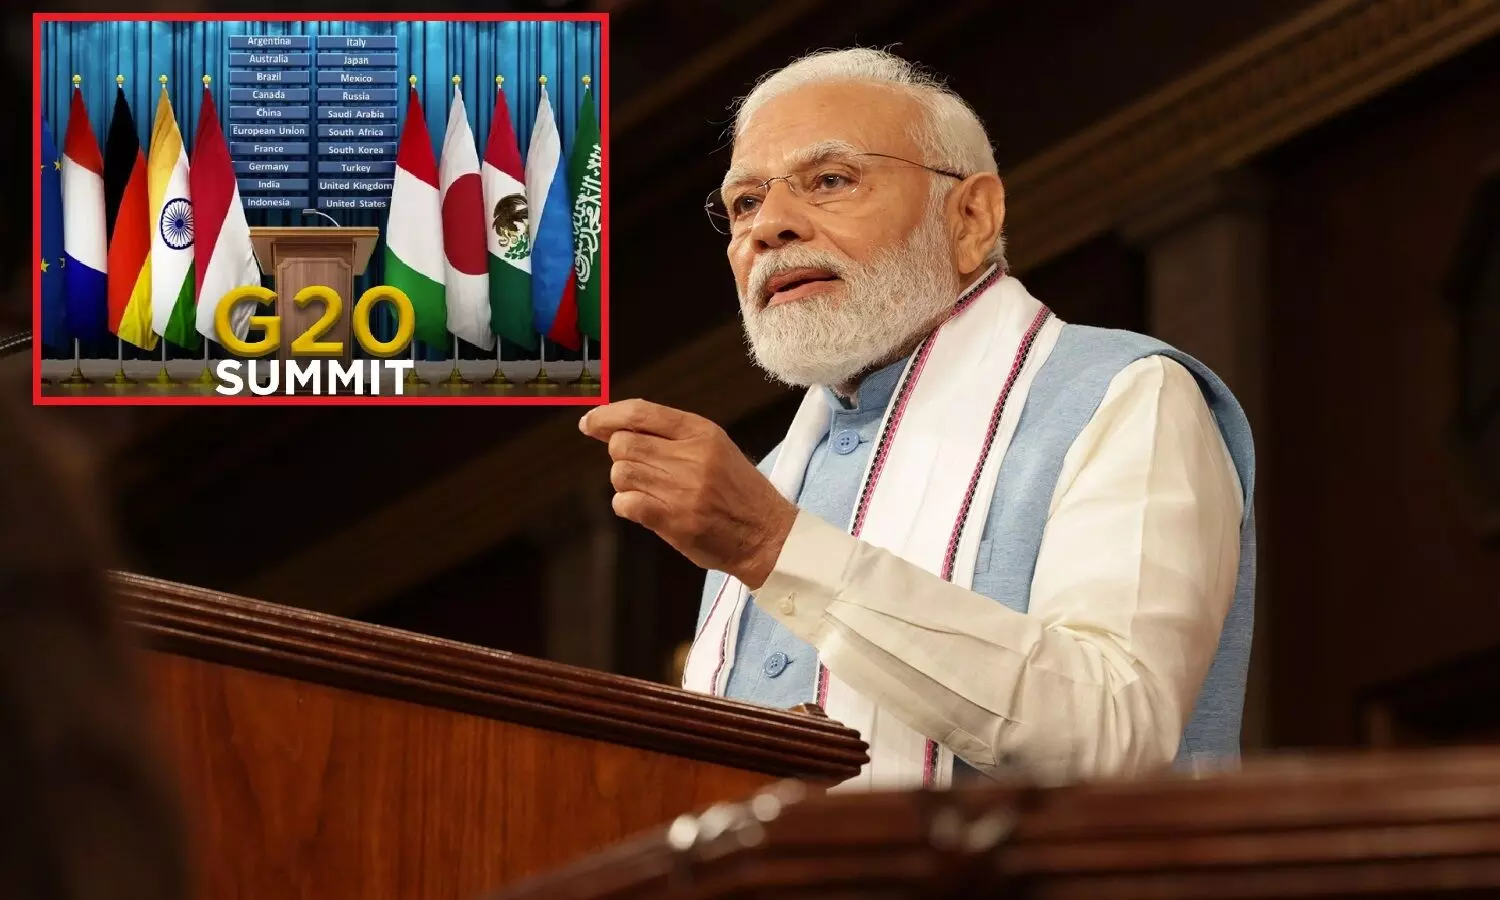 दुनियाभर में हर समस्या होती जा रही अति विकराल, मगर जी20 के बीच मीडिया और सत्ता का गठजोड़ PM मोदी को महान नायक बताने में व्यस्त